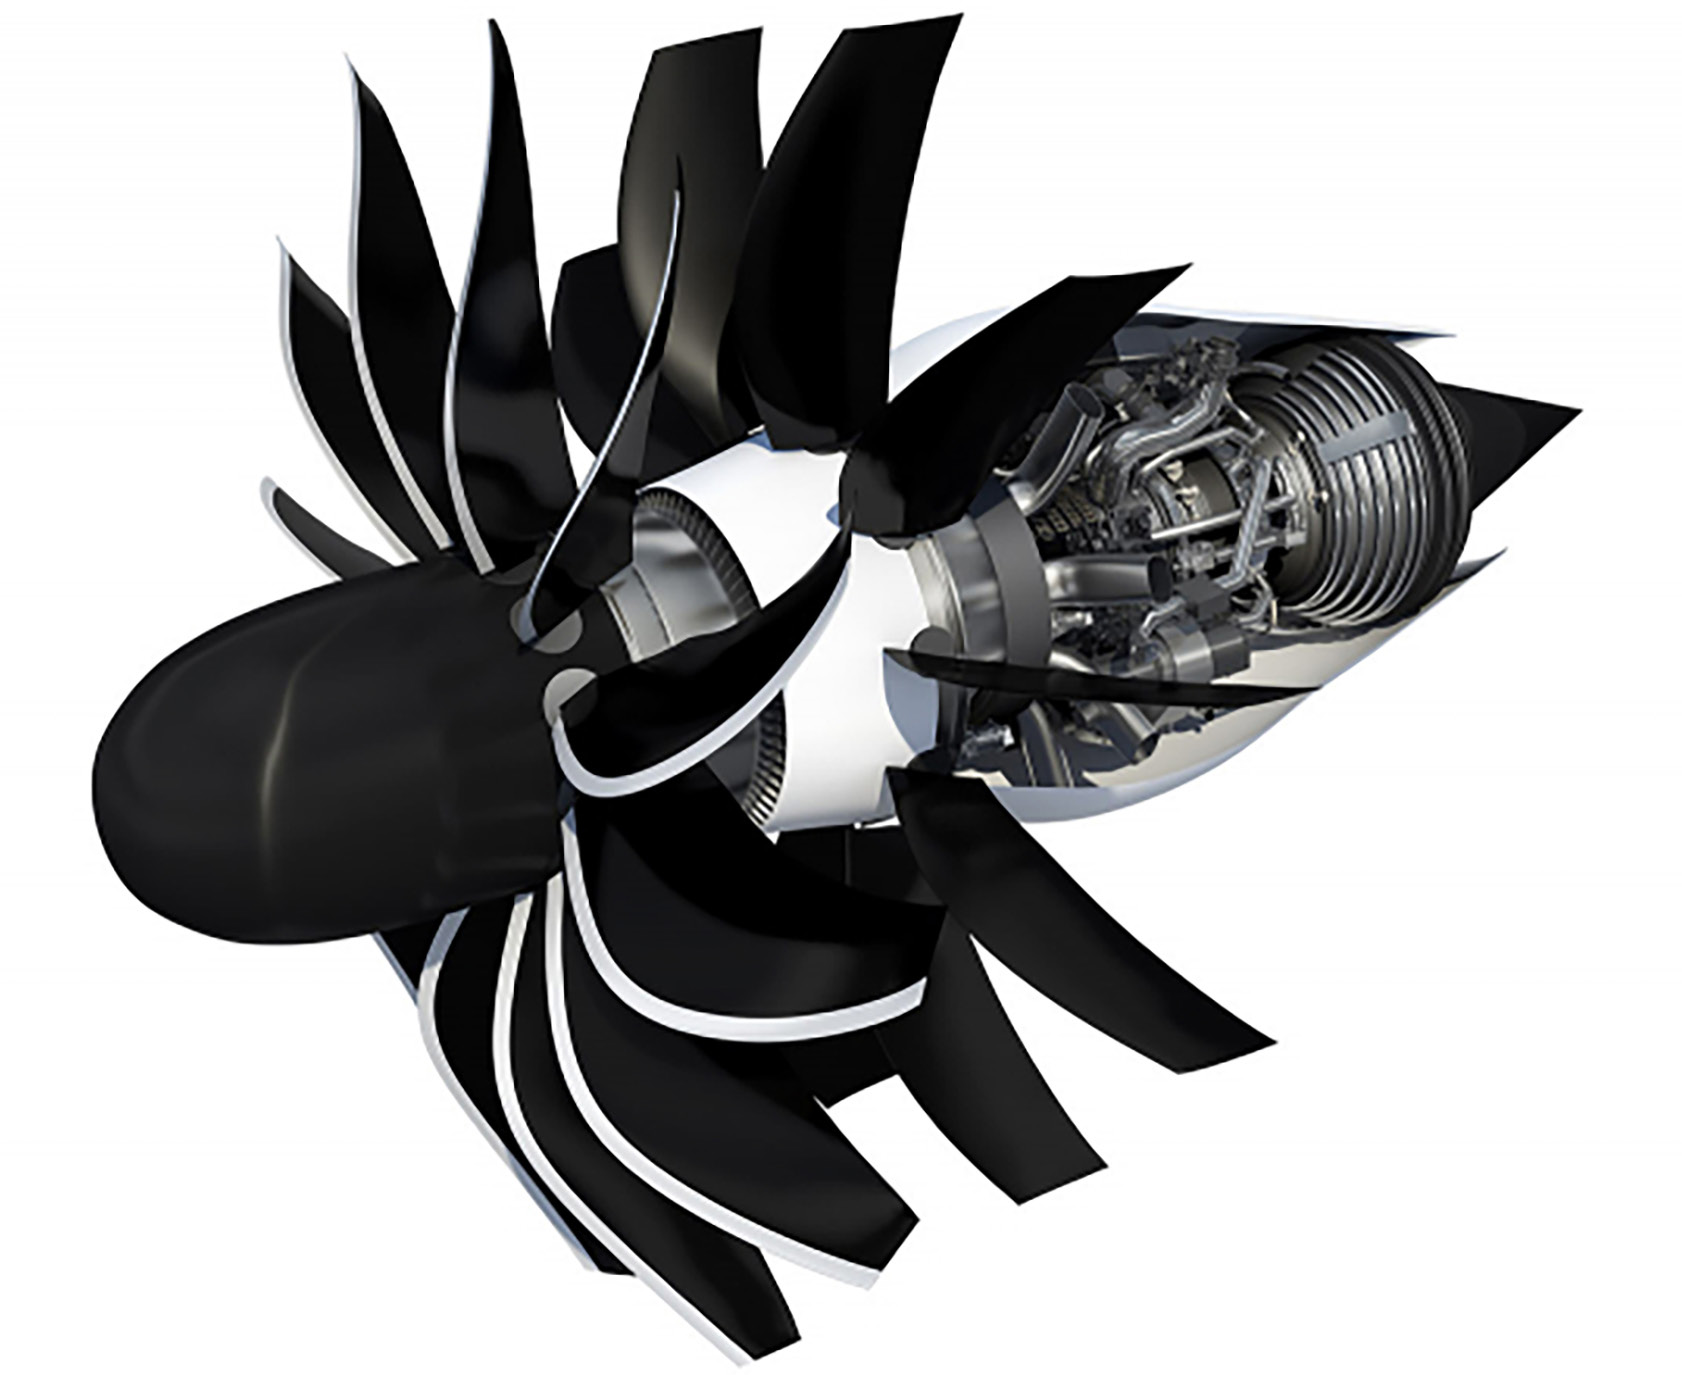 Le moteur CFM56 réalisé dans le cadre du partenariat CFM est l’un des plus grands succès commerciaux de l’histoire de l’aéronautique civile. Son successeur, le moteur LEAP, dispose, fin 2022, d’un carnet de commandes d’environ 10 000 moteurs.